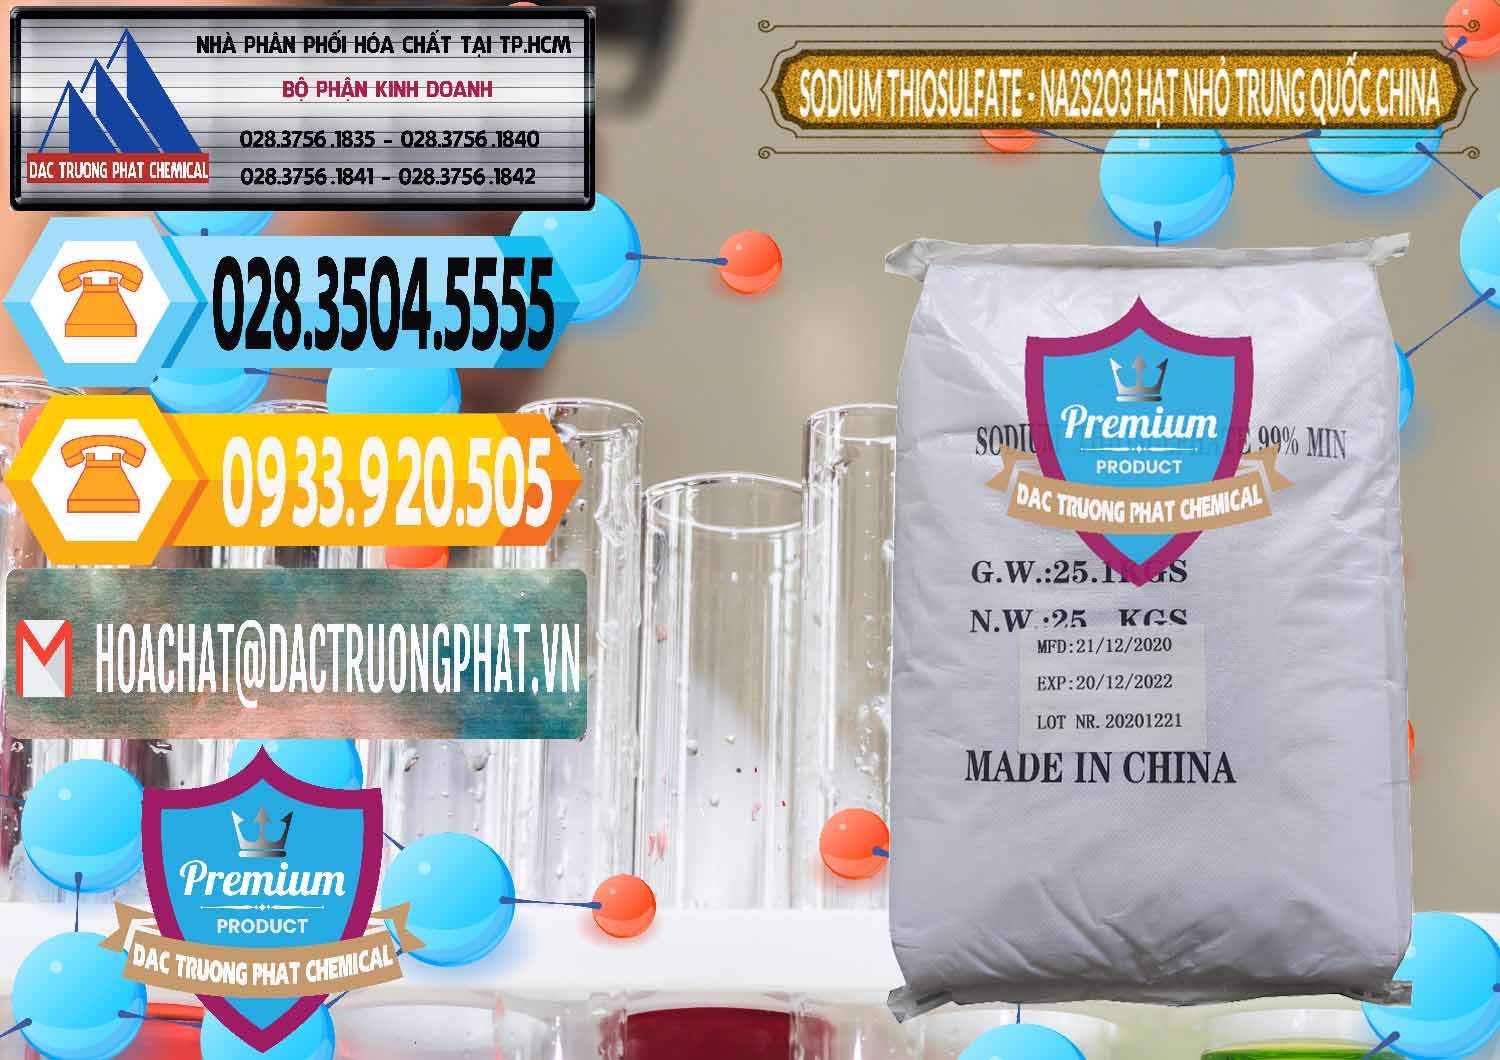 Cty bán - cung cấp Sodium Thiosulfate - NA2S2O3 Hạt Nhỏ Trung Quốc China - 0204 - Công ty chuyên phân phối - bán hóa chất tại TP.HCM - hoachattayrua.net